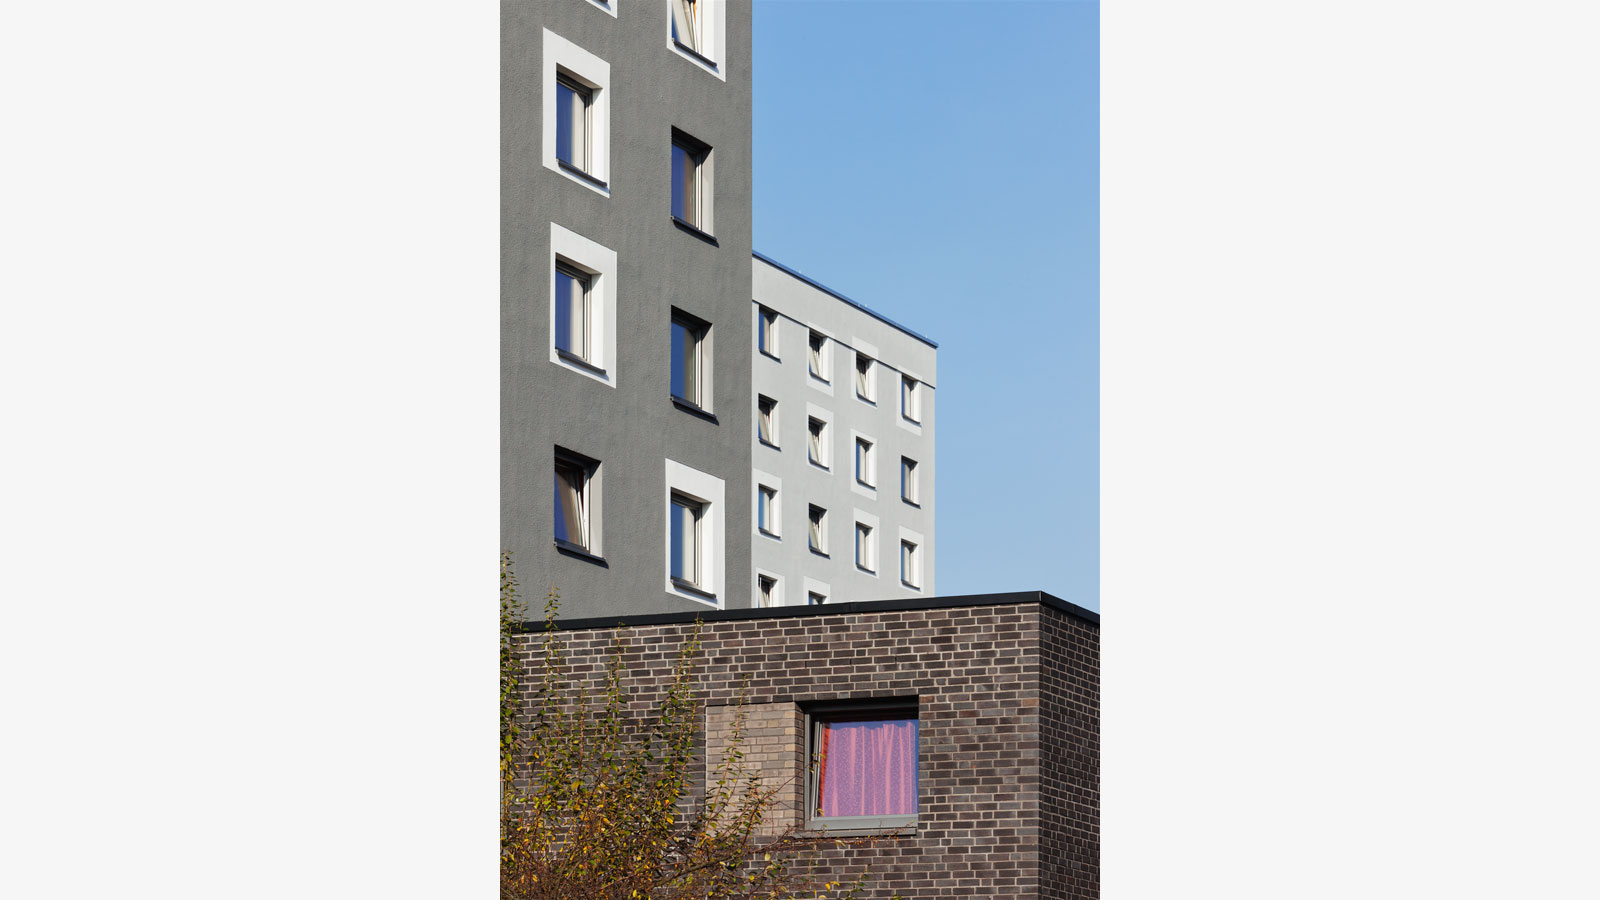 Architekt Bonn Studierendenwohnheim Römerlager - Schadstoffsanierung, energetische Sanierung, WDVS, Klinkerfassade - Koenigs Rütter Architekten Bonn